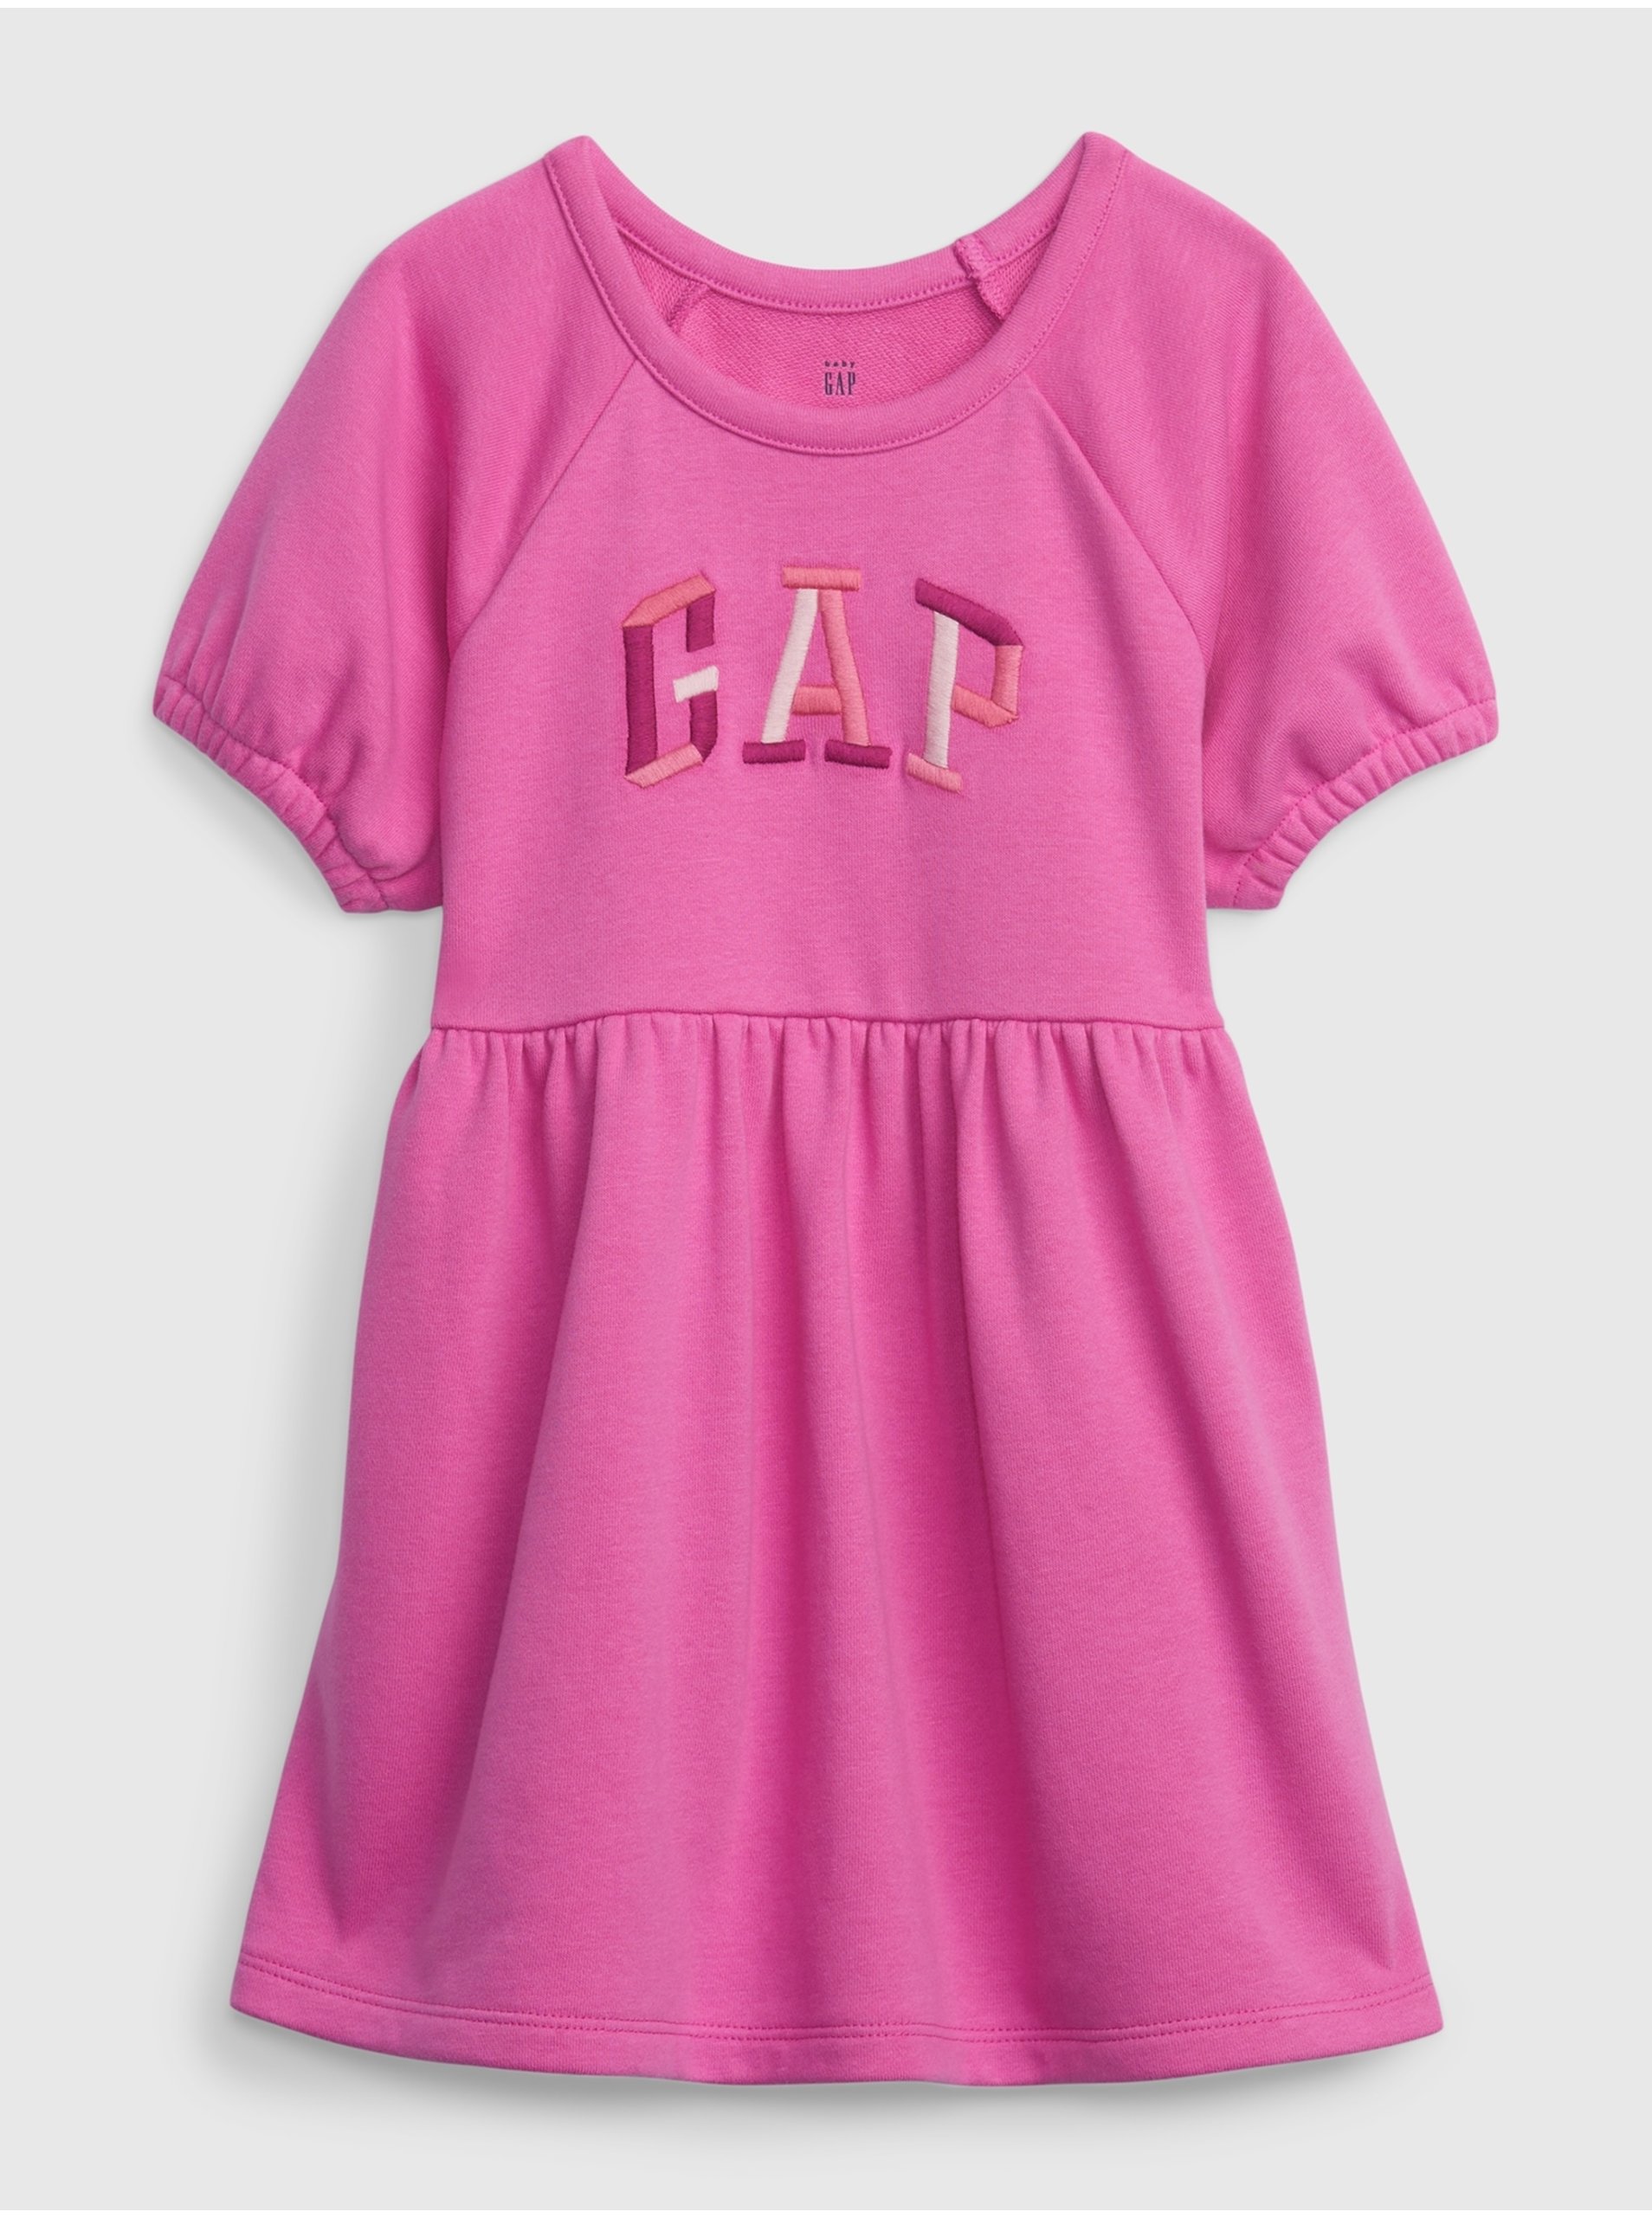 Levně Tmavě růžové holčičí bavlněné šaty s logem GAP